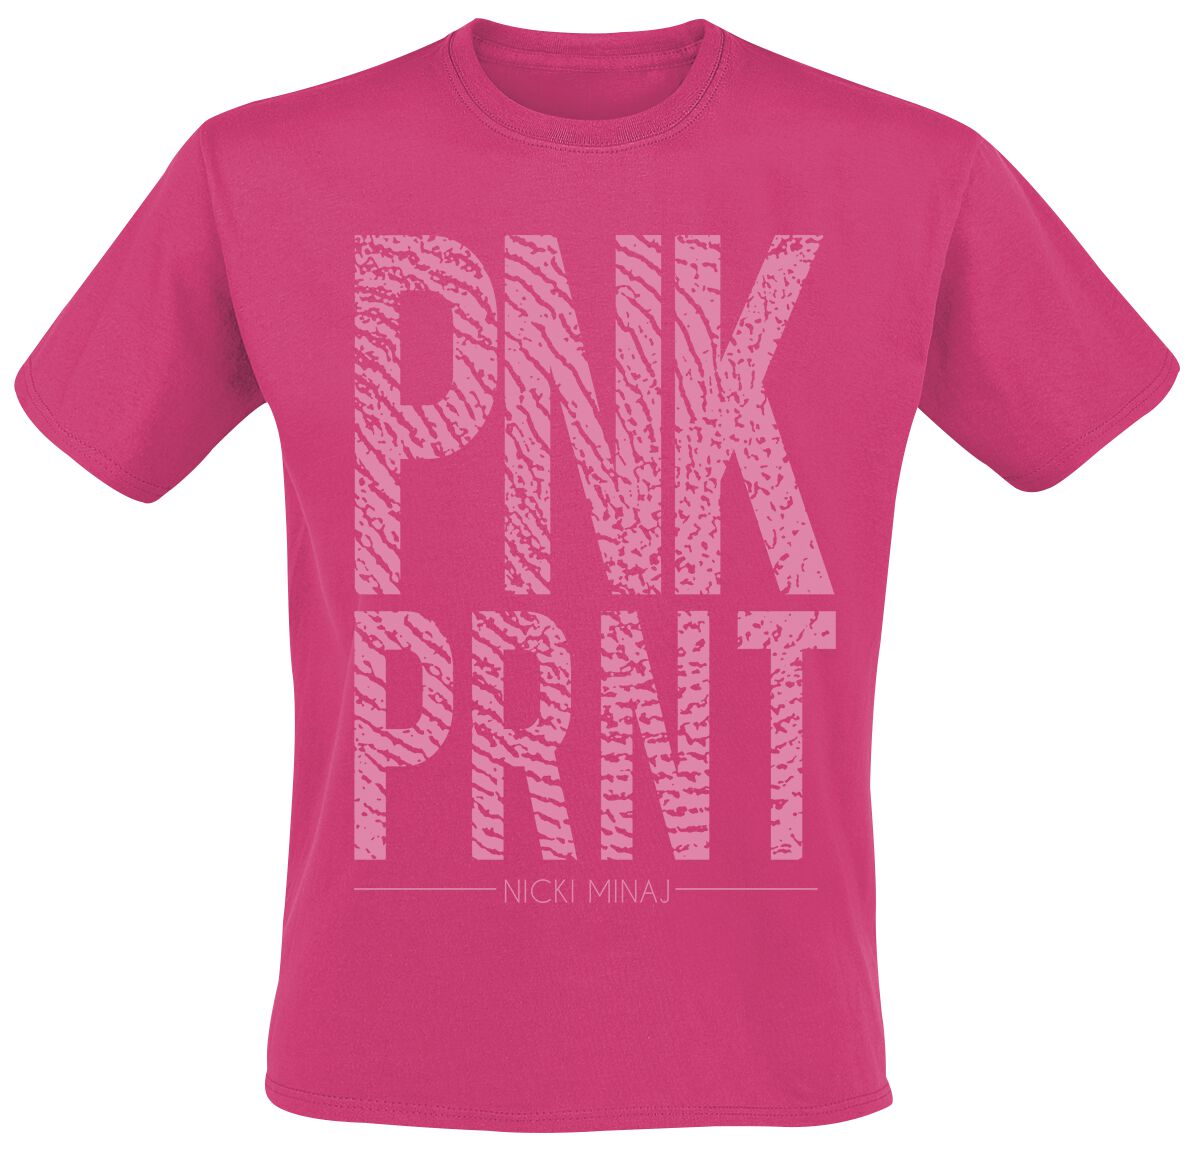 Nicki Minaj T-Shirt - Pnk Prnt - S bis XXL - für Männer - Größe L - pink  - Lizenziertes Merchandise!